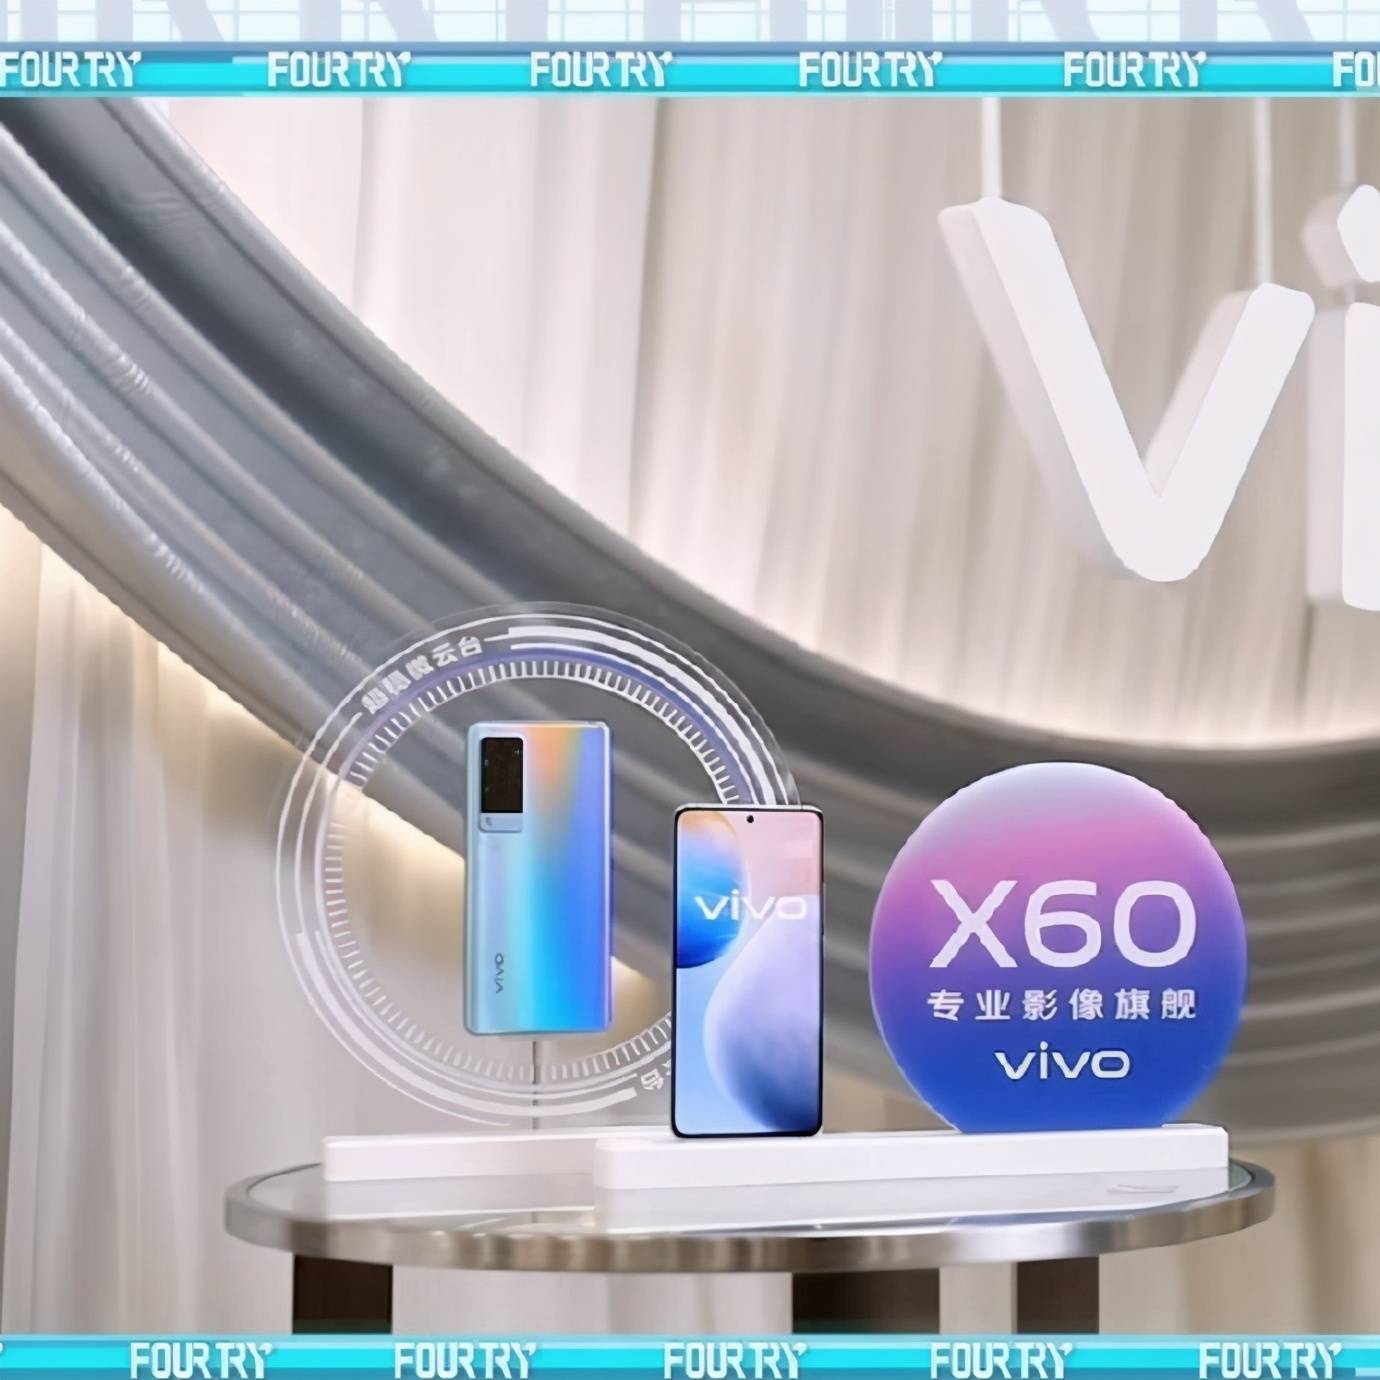 vivox60宣传语图片